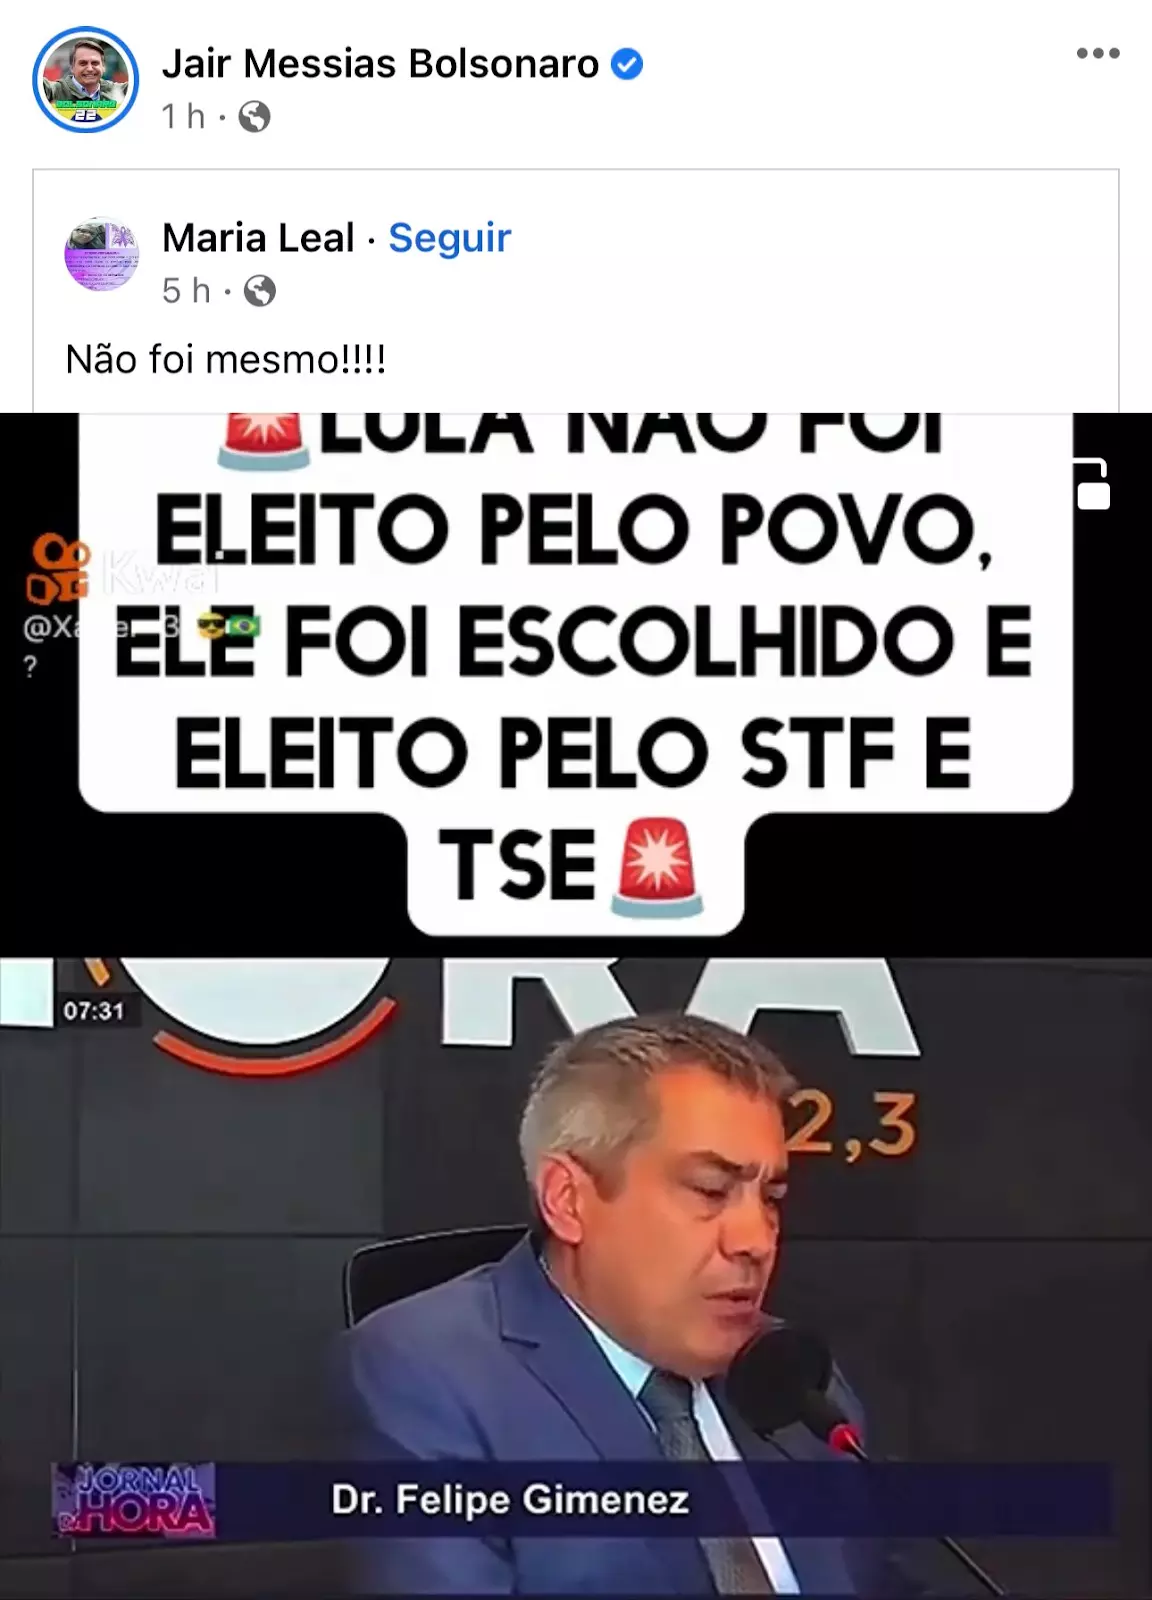 Print de postagem apagada por Bolsonaro no Facebook